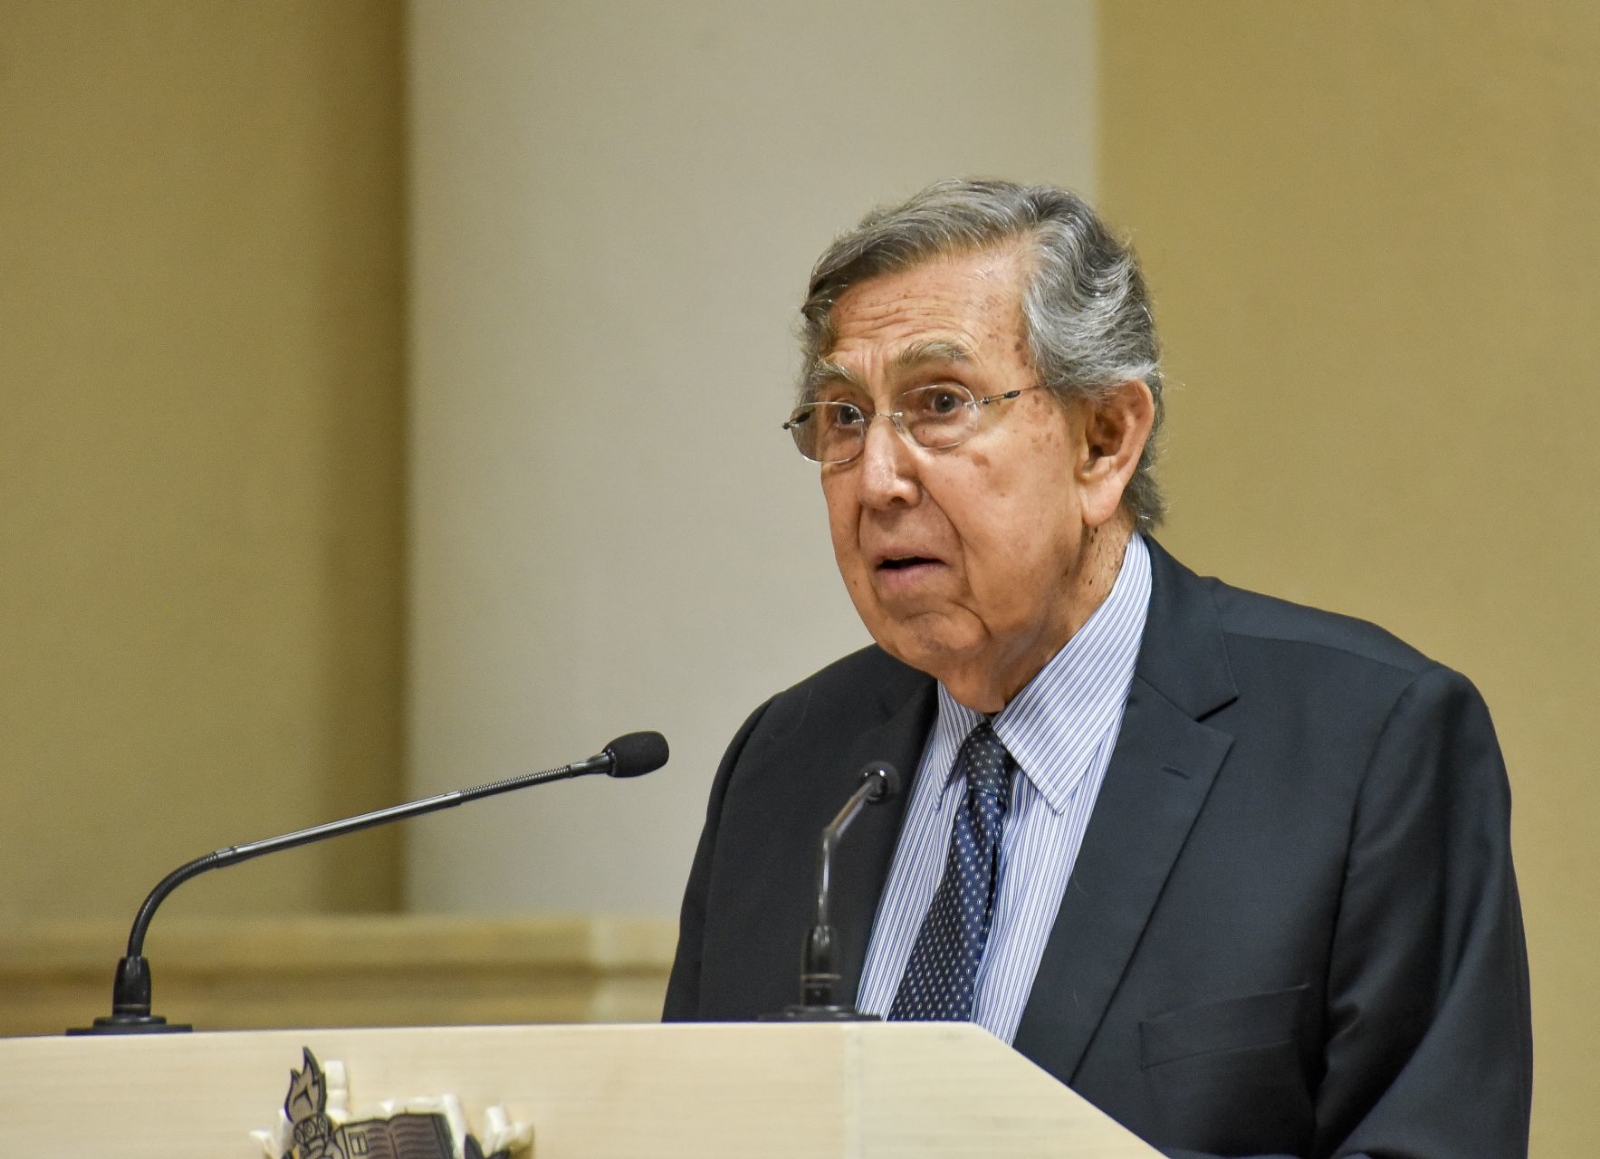 Cuauhtémoc Cárdenas, el hombre de luchas políticas enfrenta al COVID a sus 86 años